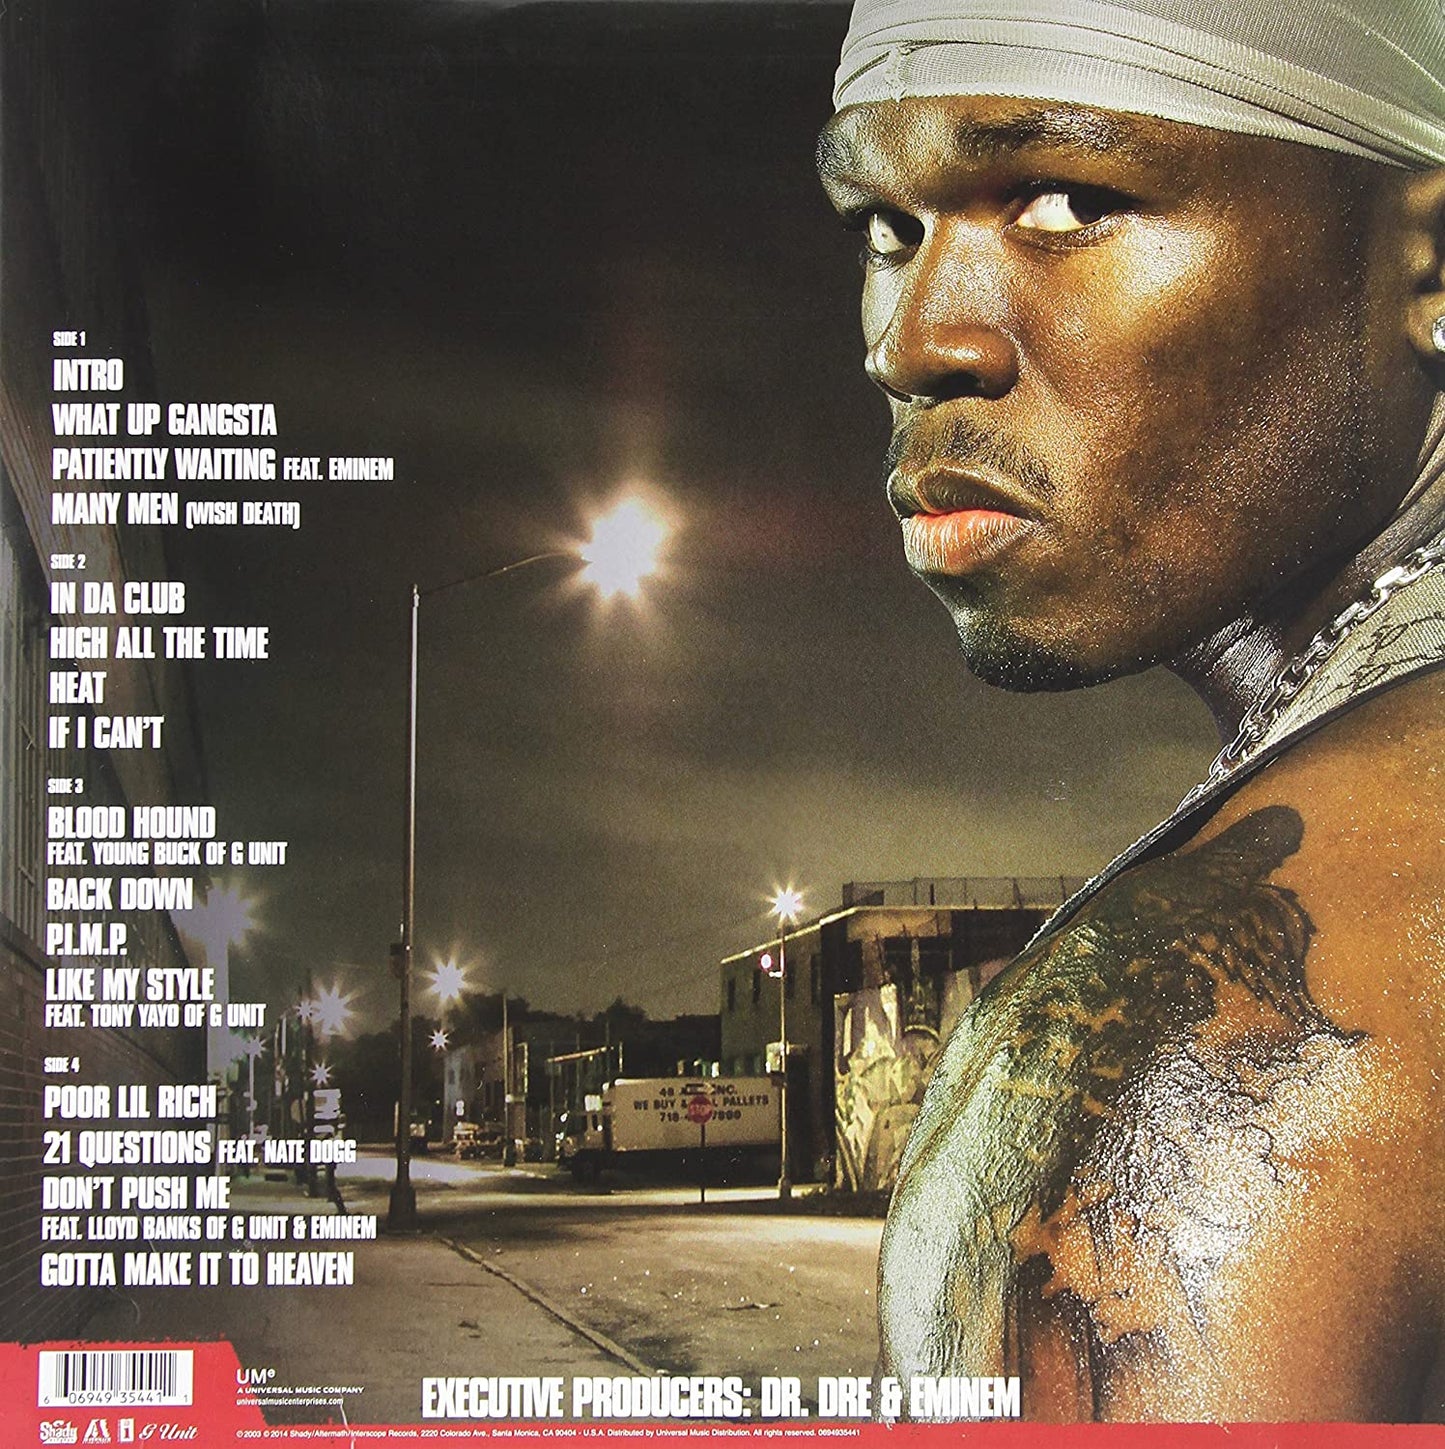 50 Cent/Get Rich Or Die Tryin' [LP]